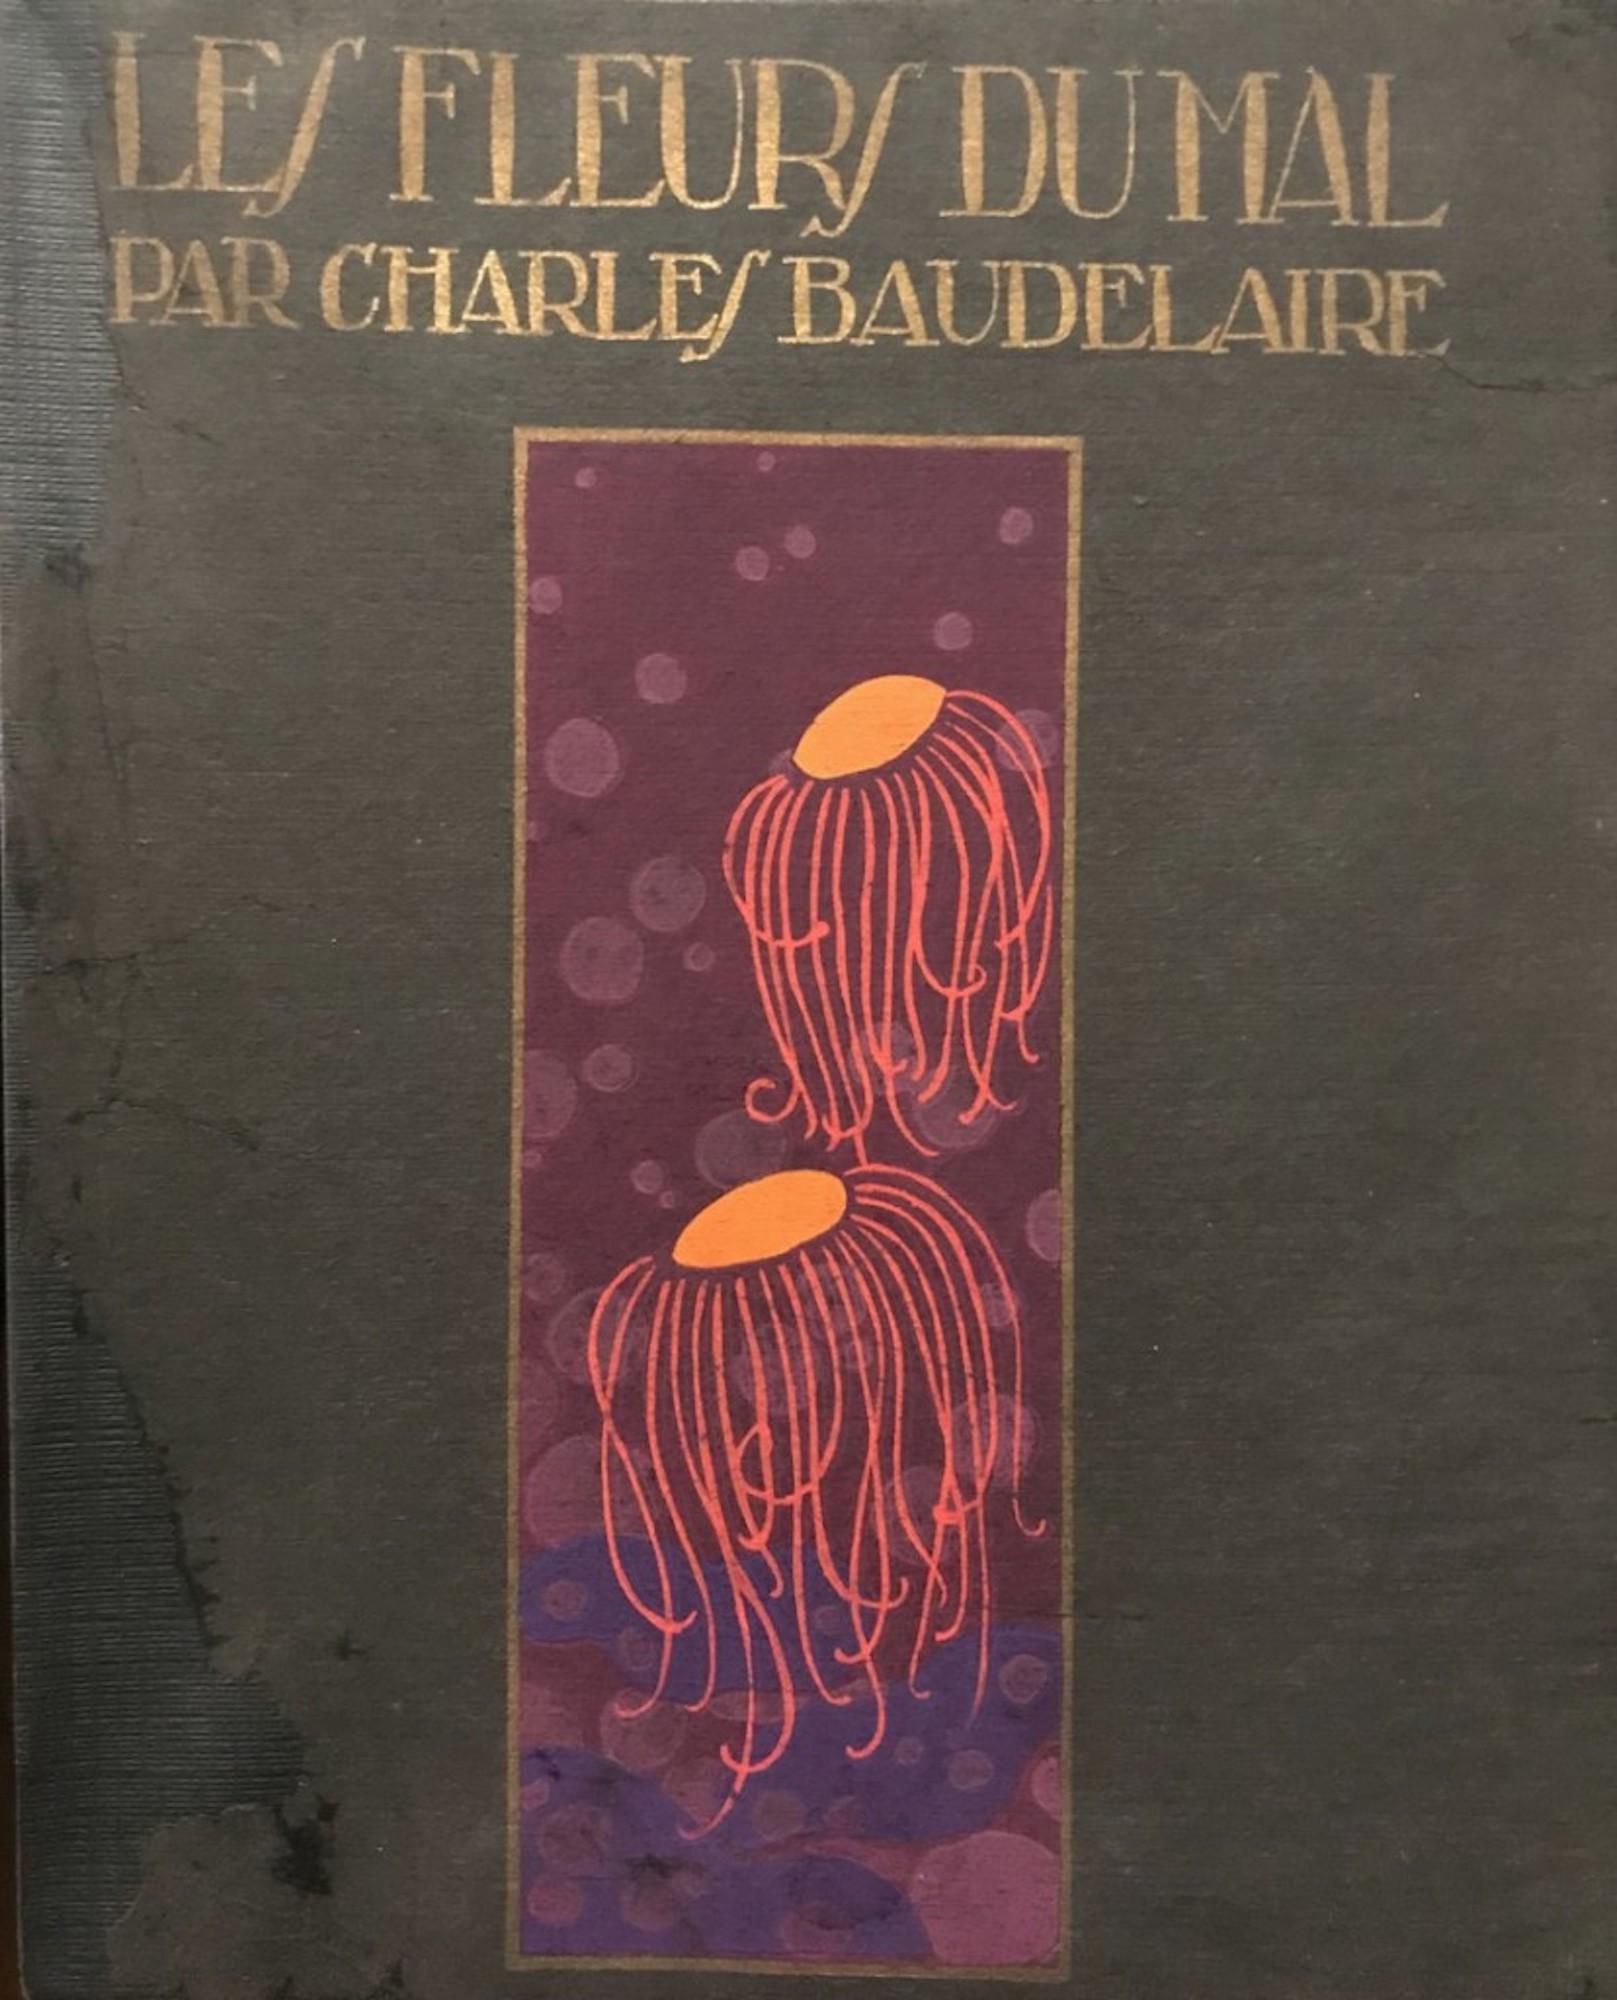 Les Fleurs du Mal de Baudelaire - Original Illustrations by A. Domin - 1920